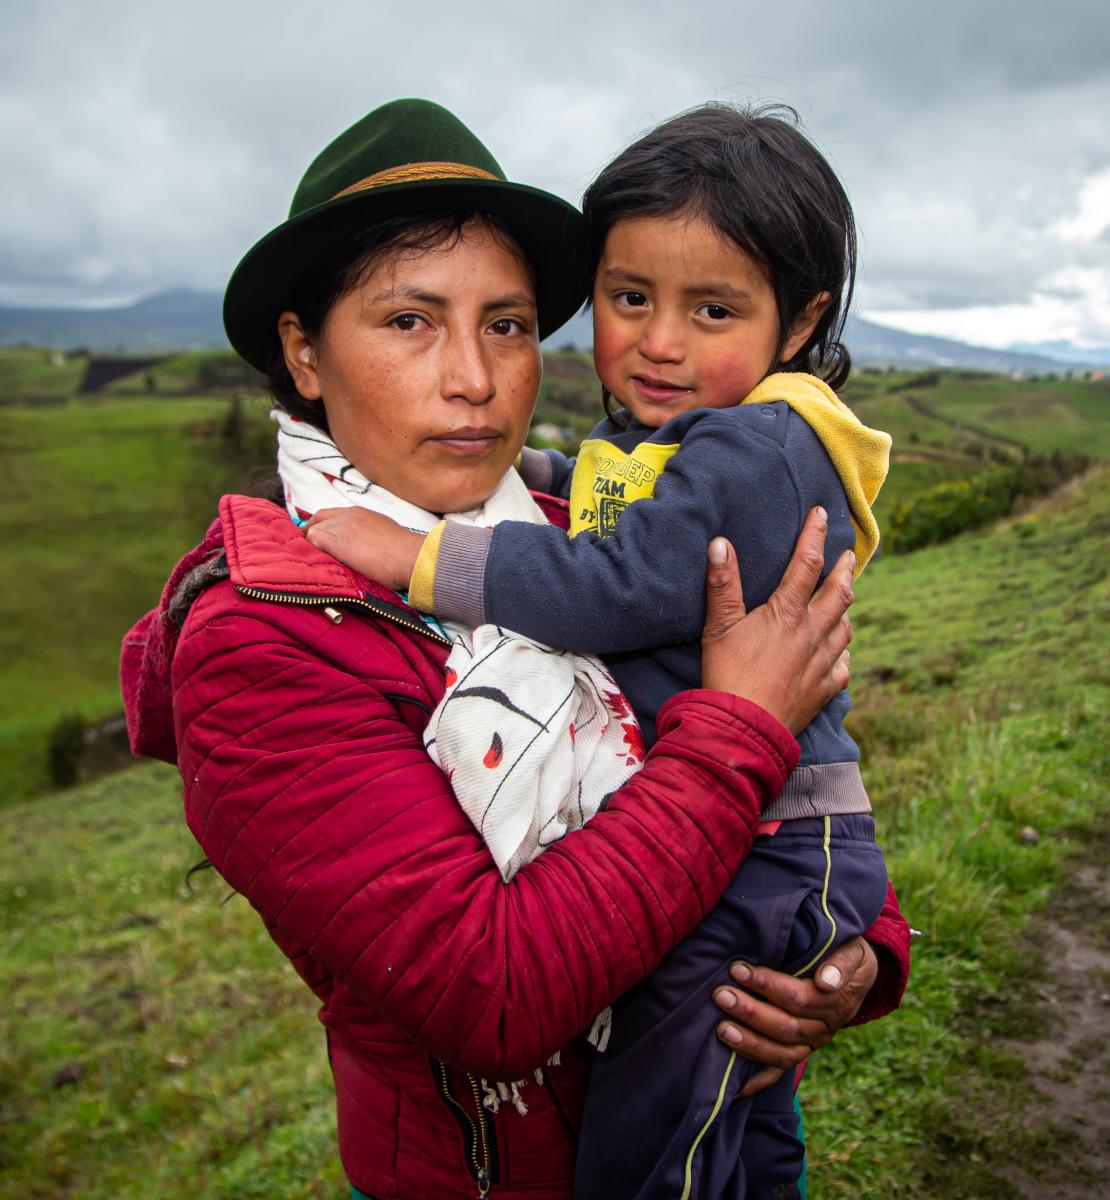 Une femme autochtone portant un chapeau se tient debout au milieu d'un champ, un jeune enfant dans les bras, par une journée nuageuse.